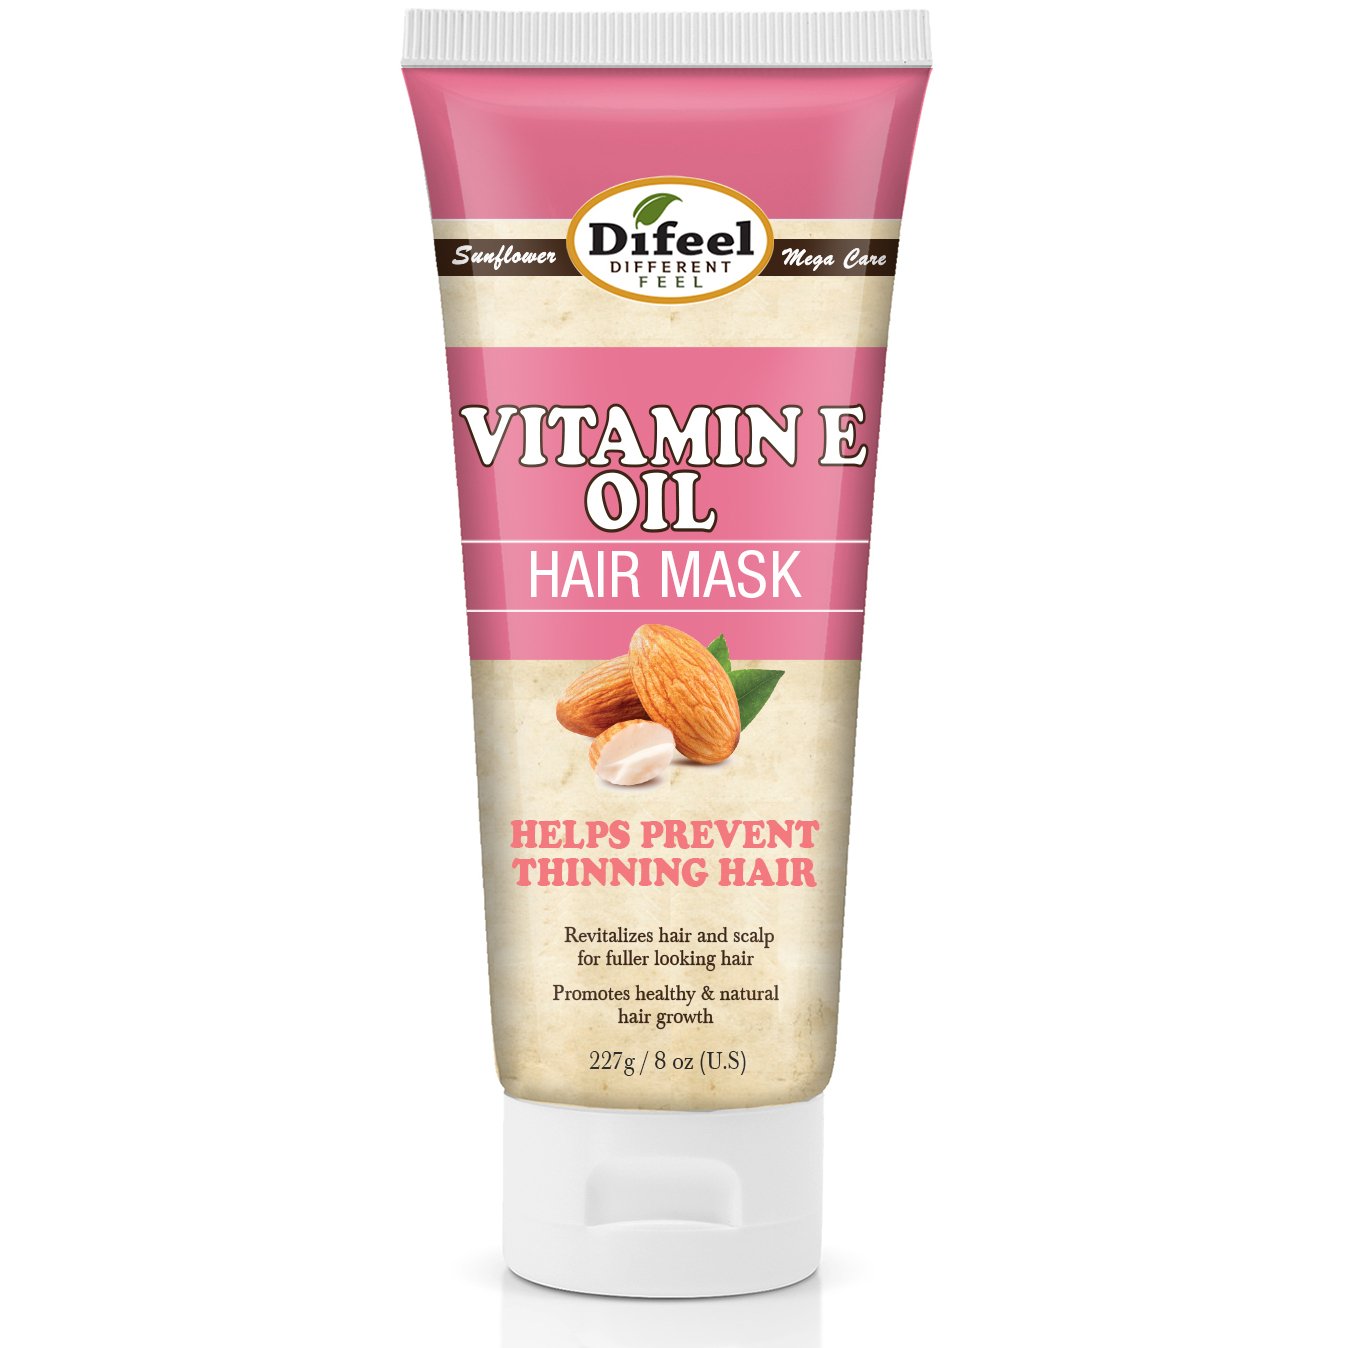 Difeel Vitamin E Oil Hair Mask 8 oz. (Pack of 2)